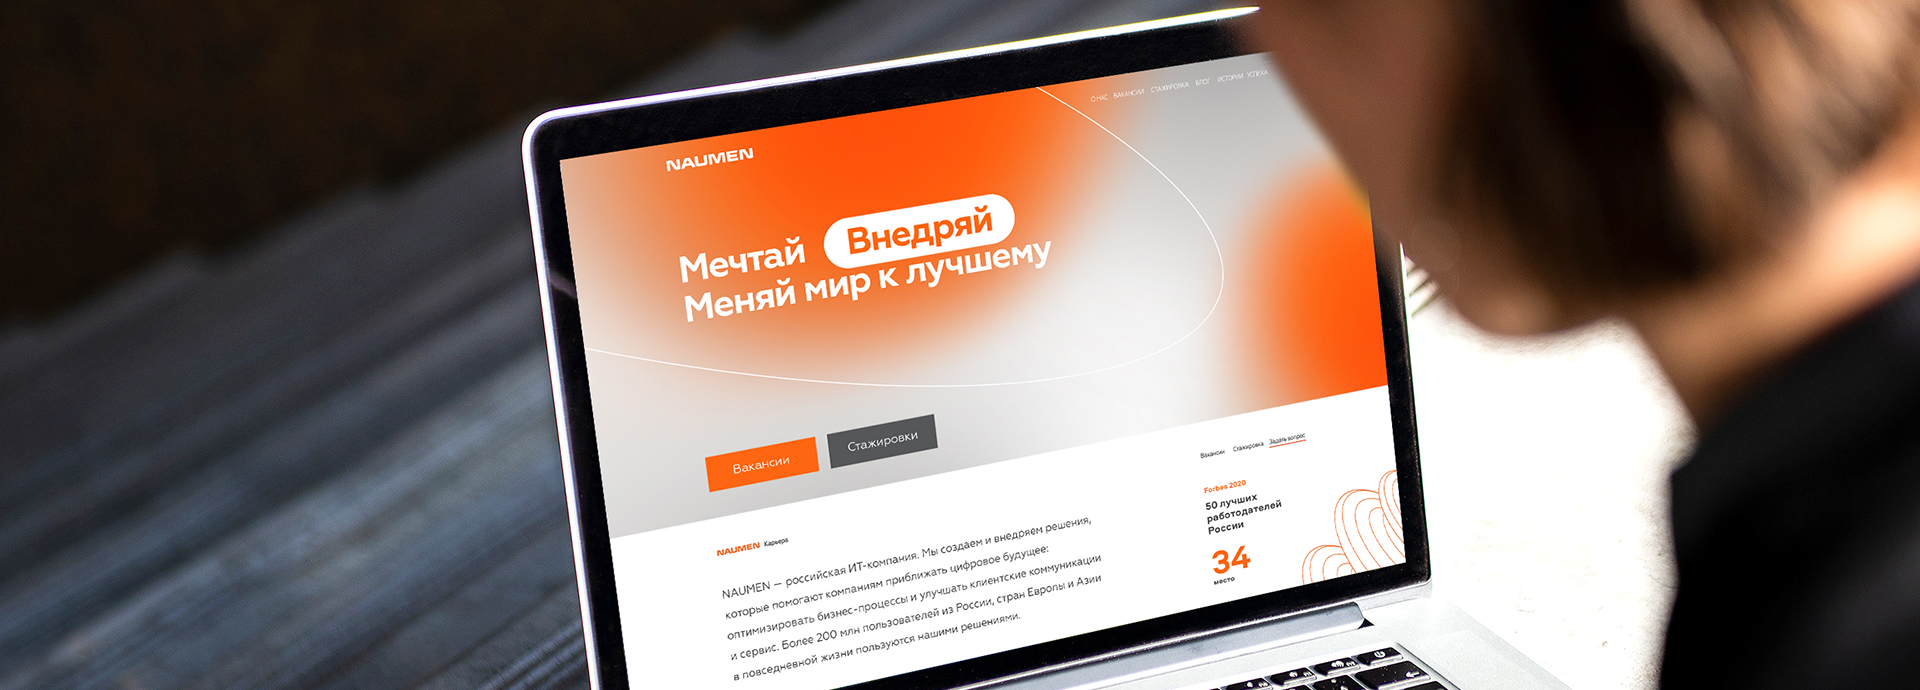 Разработка HR-бренда для российской IT-компании